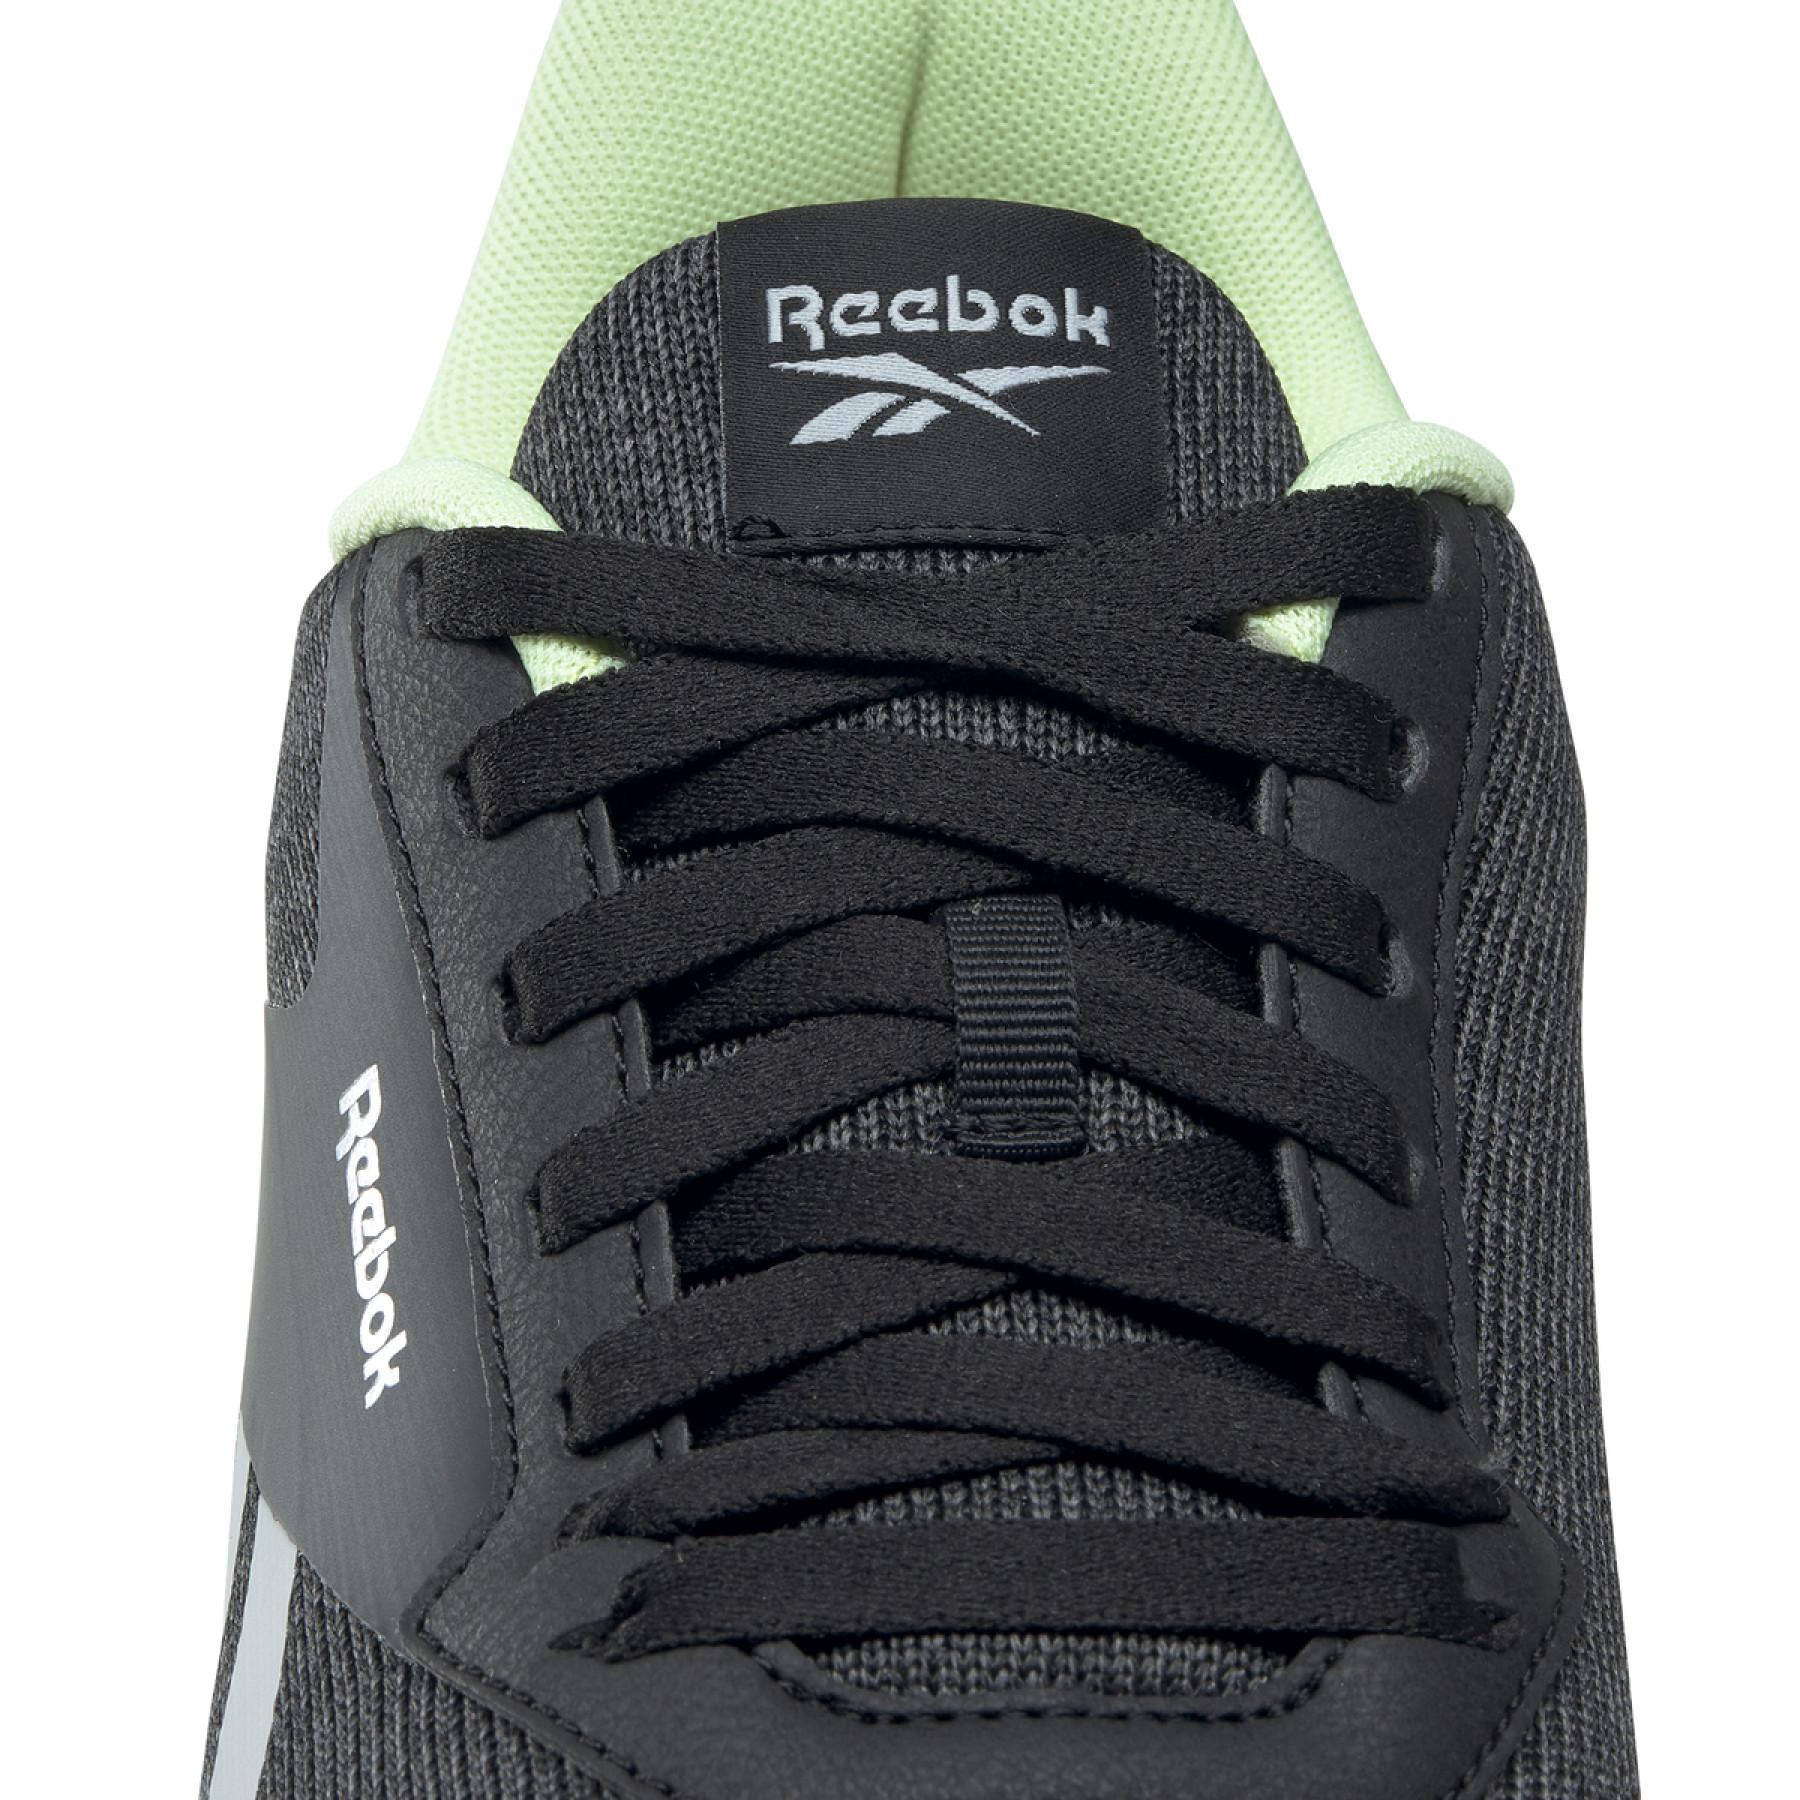 Schoenen Reebok Reebok Lite Plus 2.0